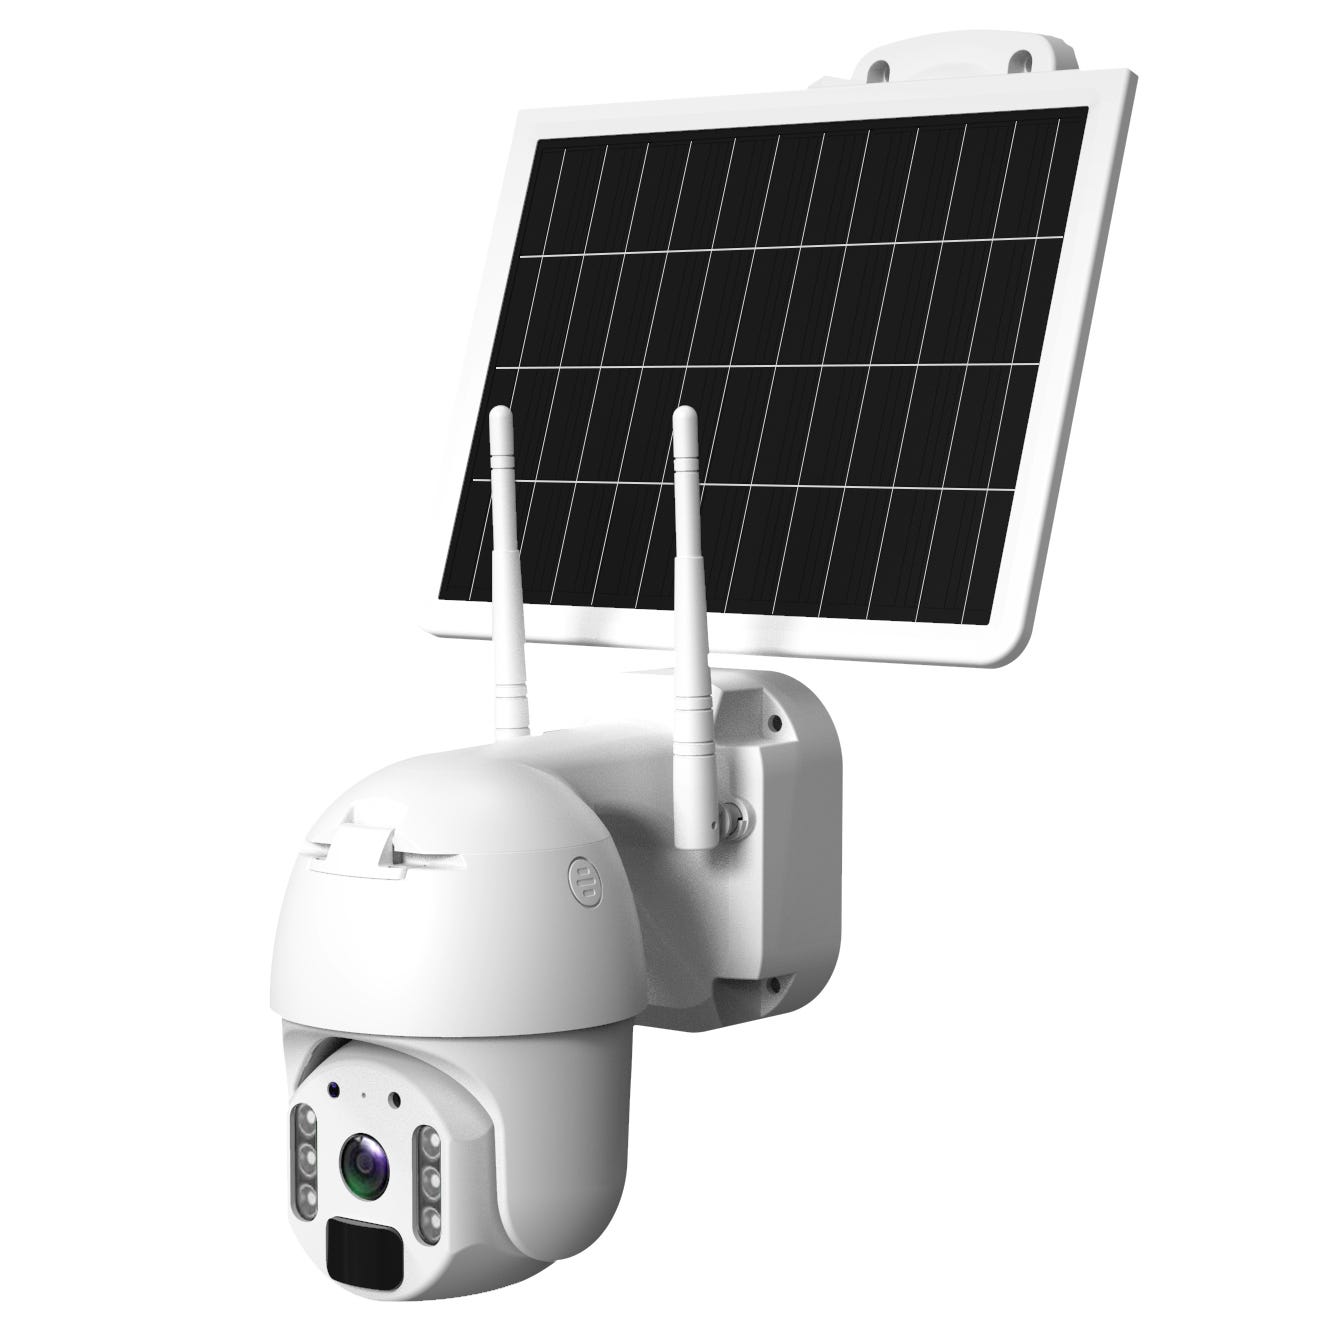 Caméra de surveillance extérieure WIFI solaire AVIDSEN